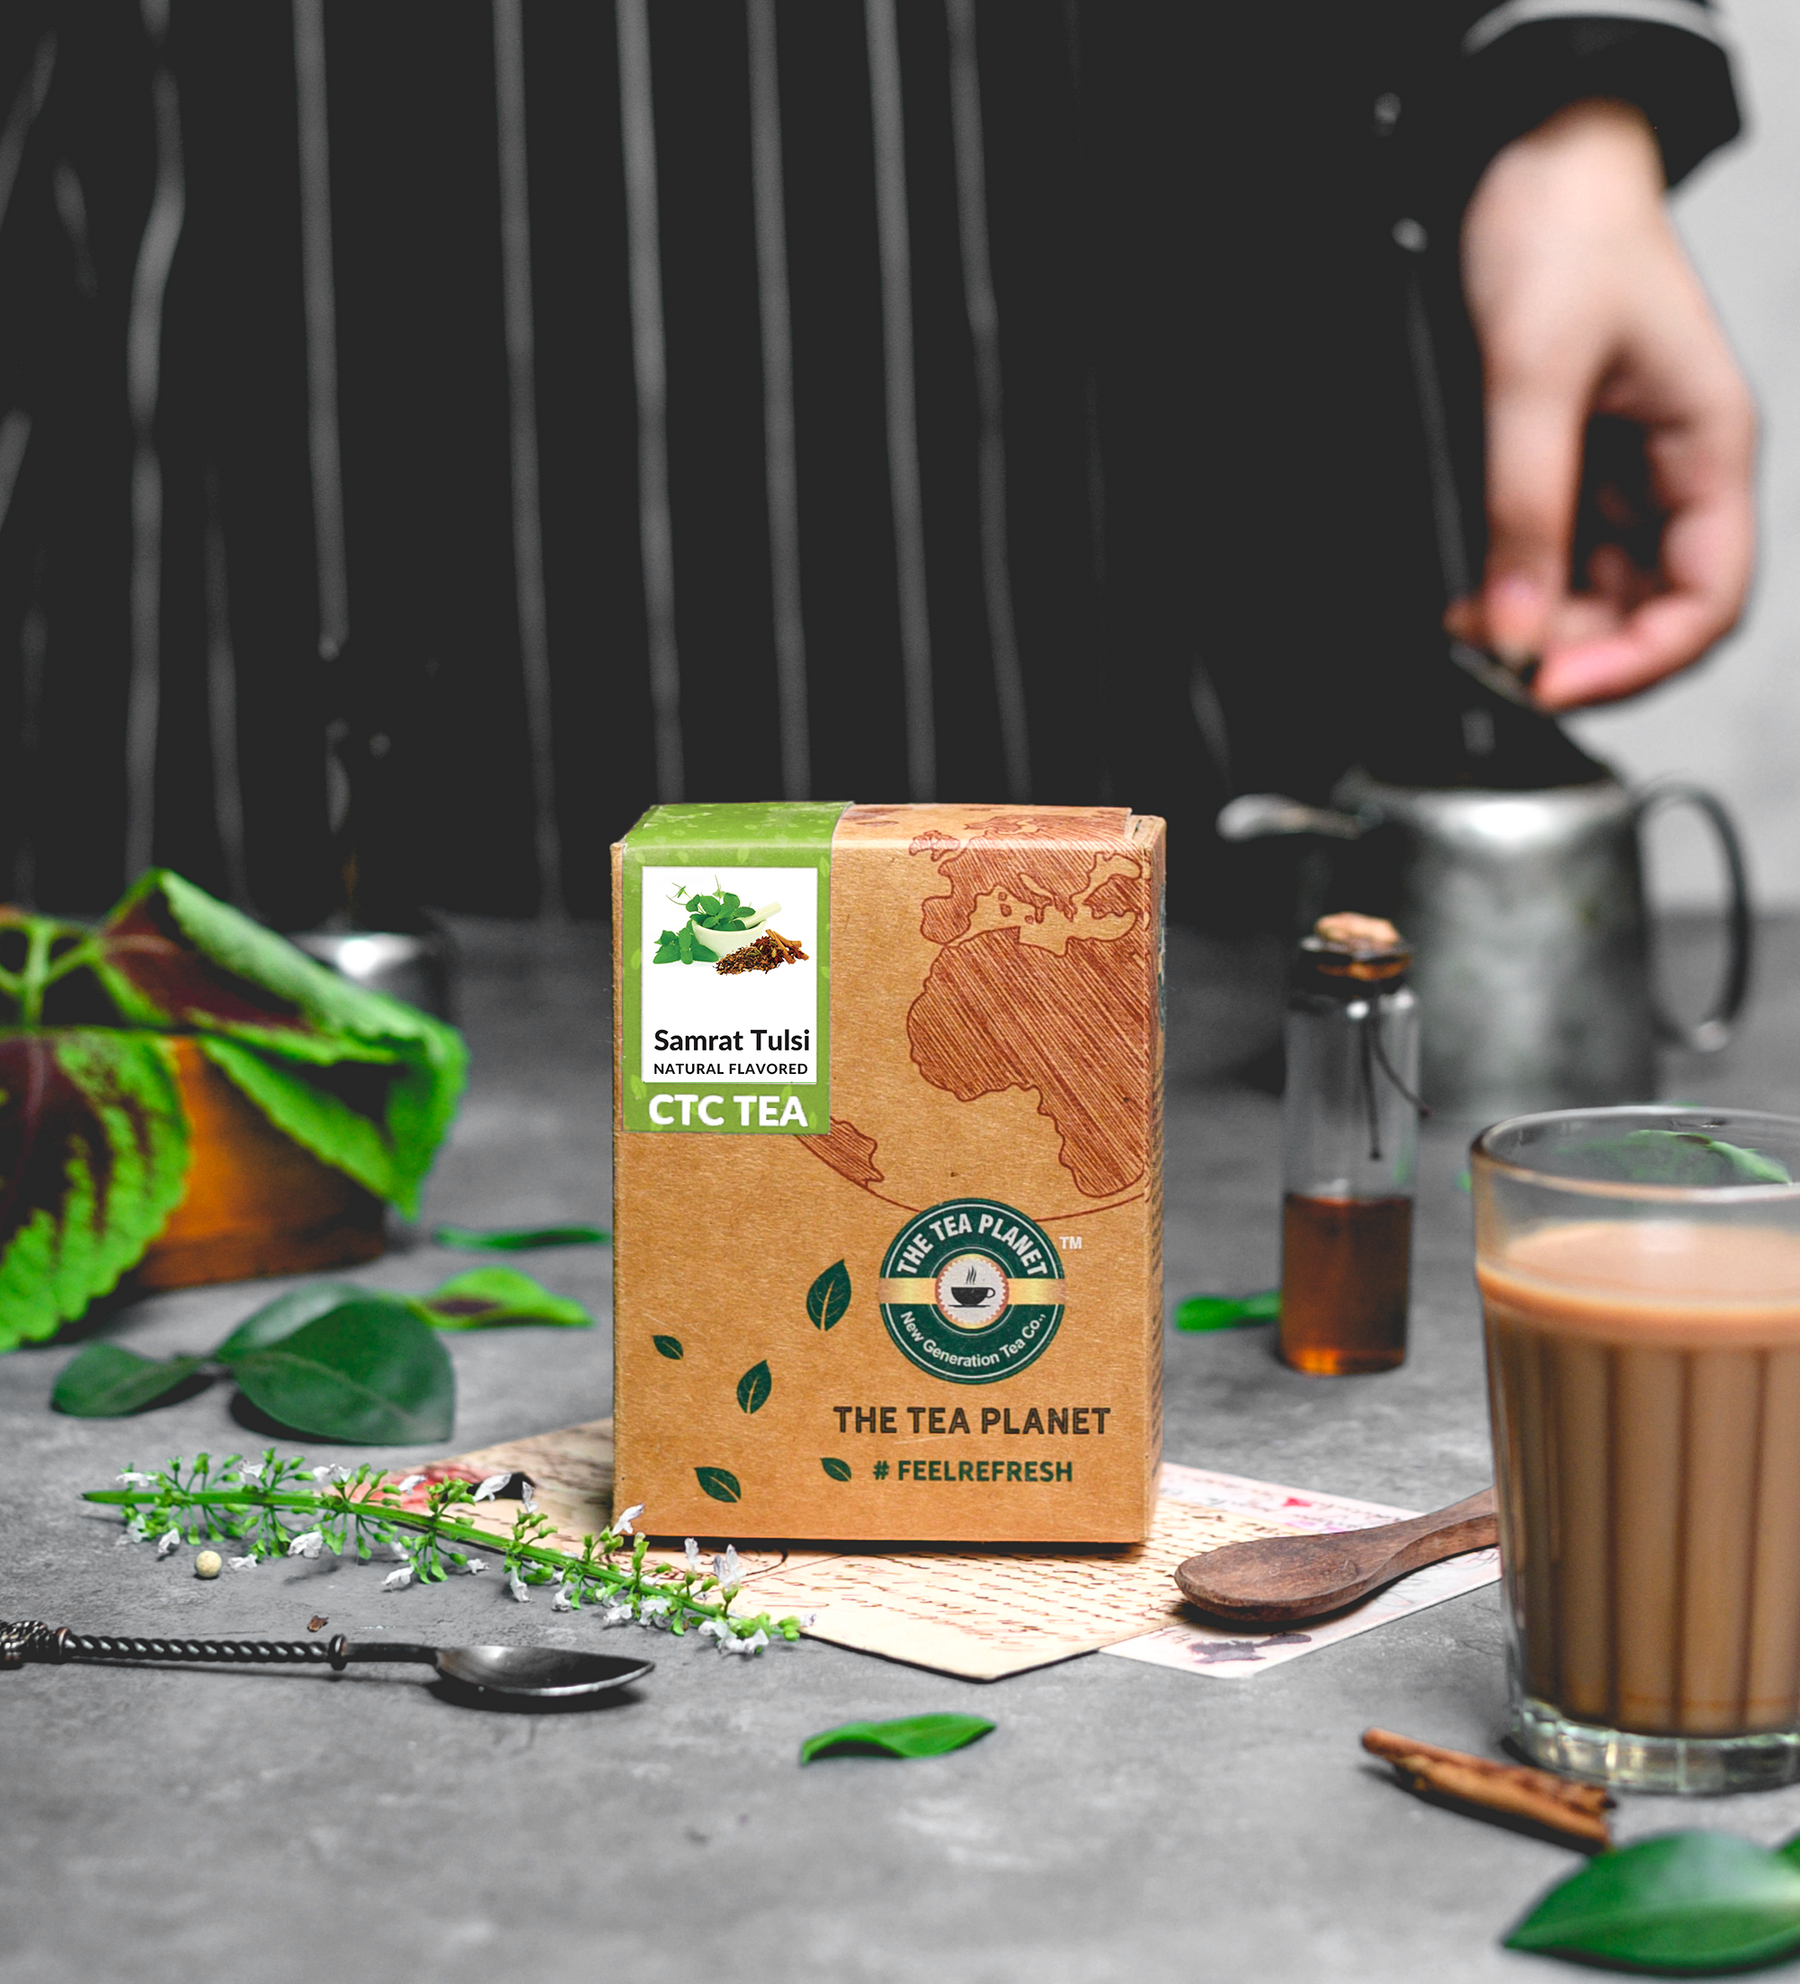 Samrat Tulsi Flavored CTC Tea5